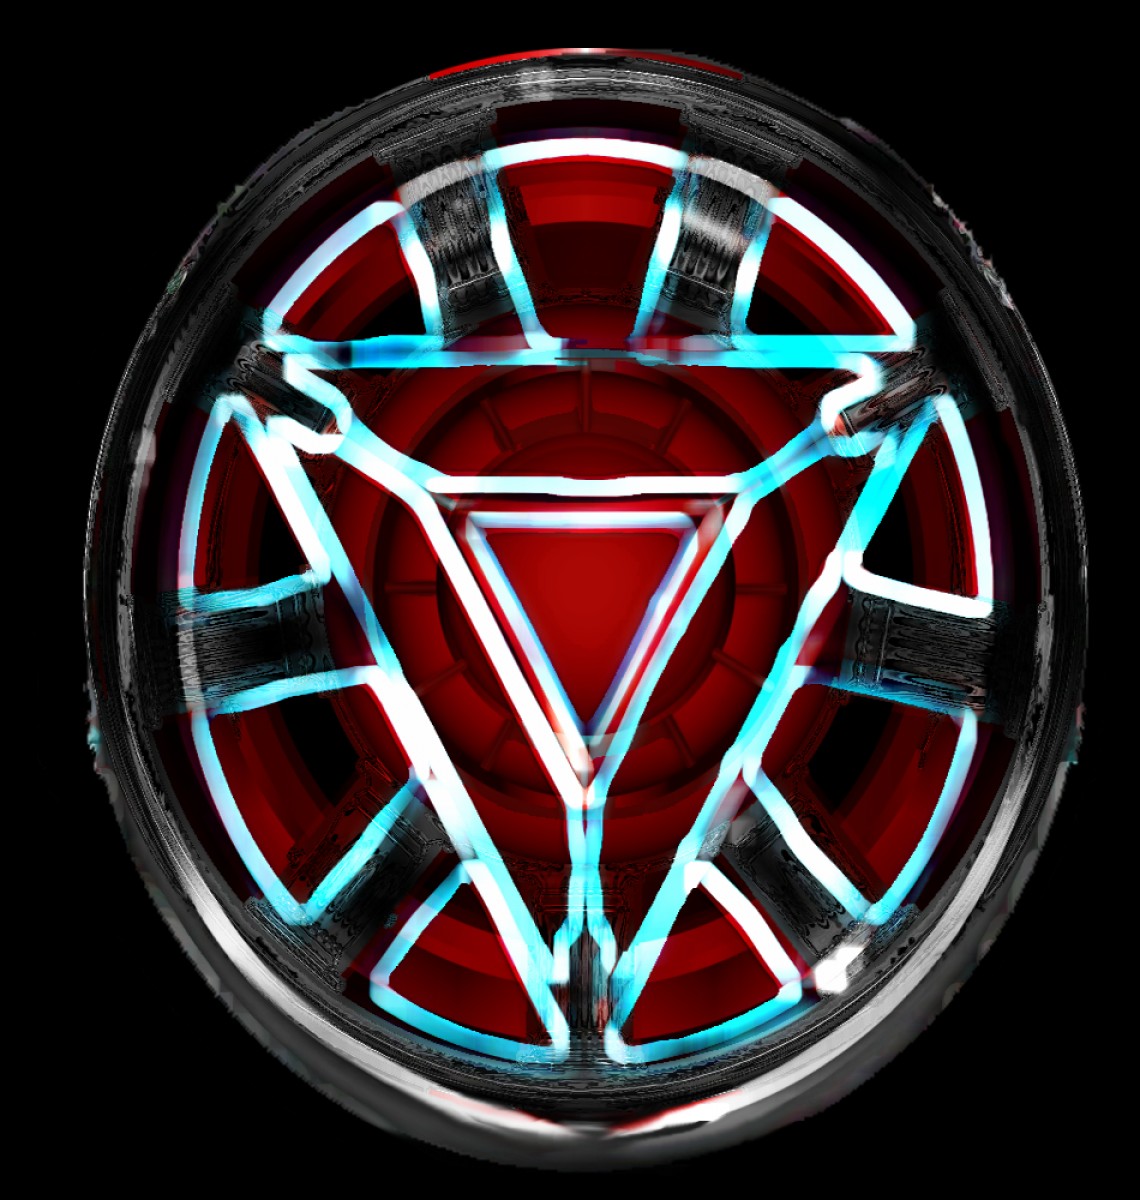 iron man logo vector at vectorifiedcom collection of